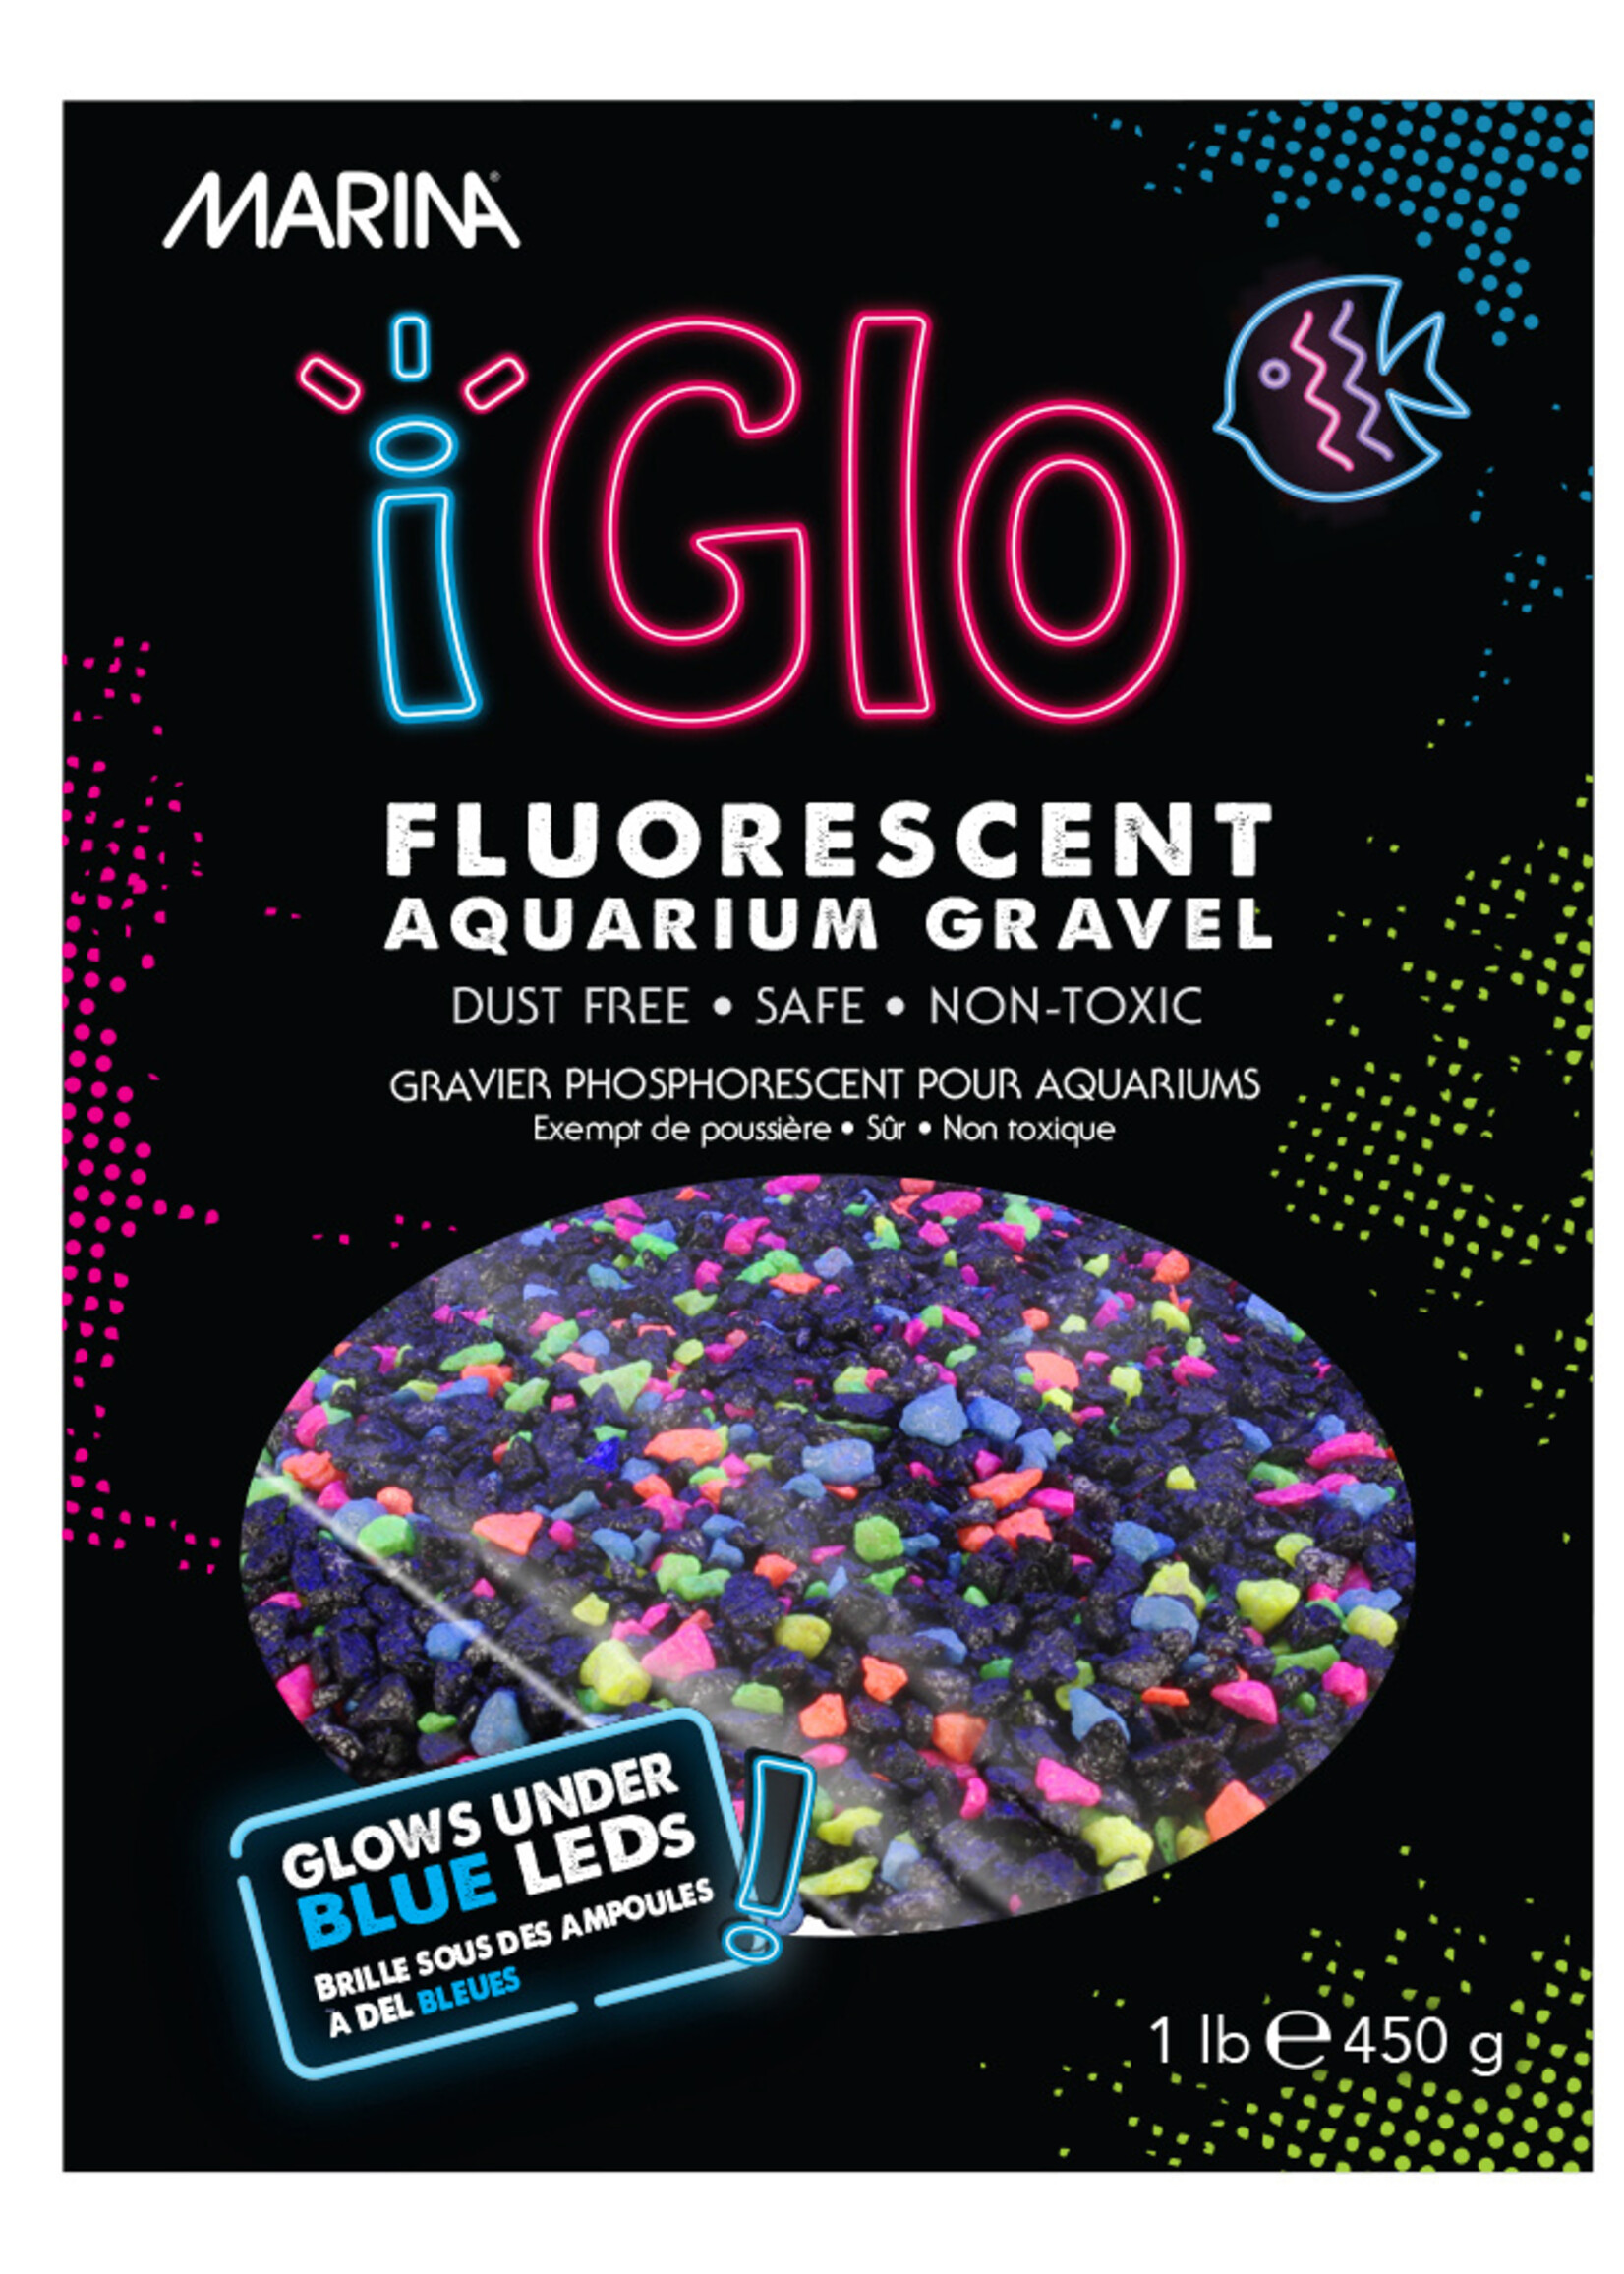 Marina® Marina® iGlo Fluorescent Gravel Galaxy 1lb